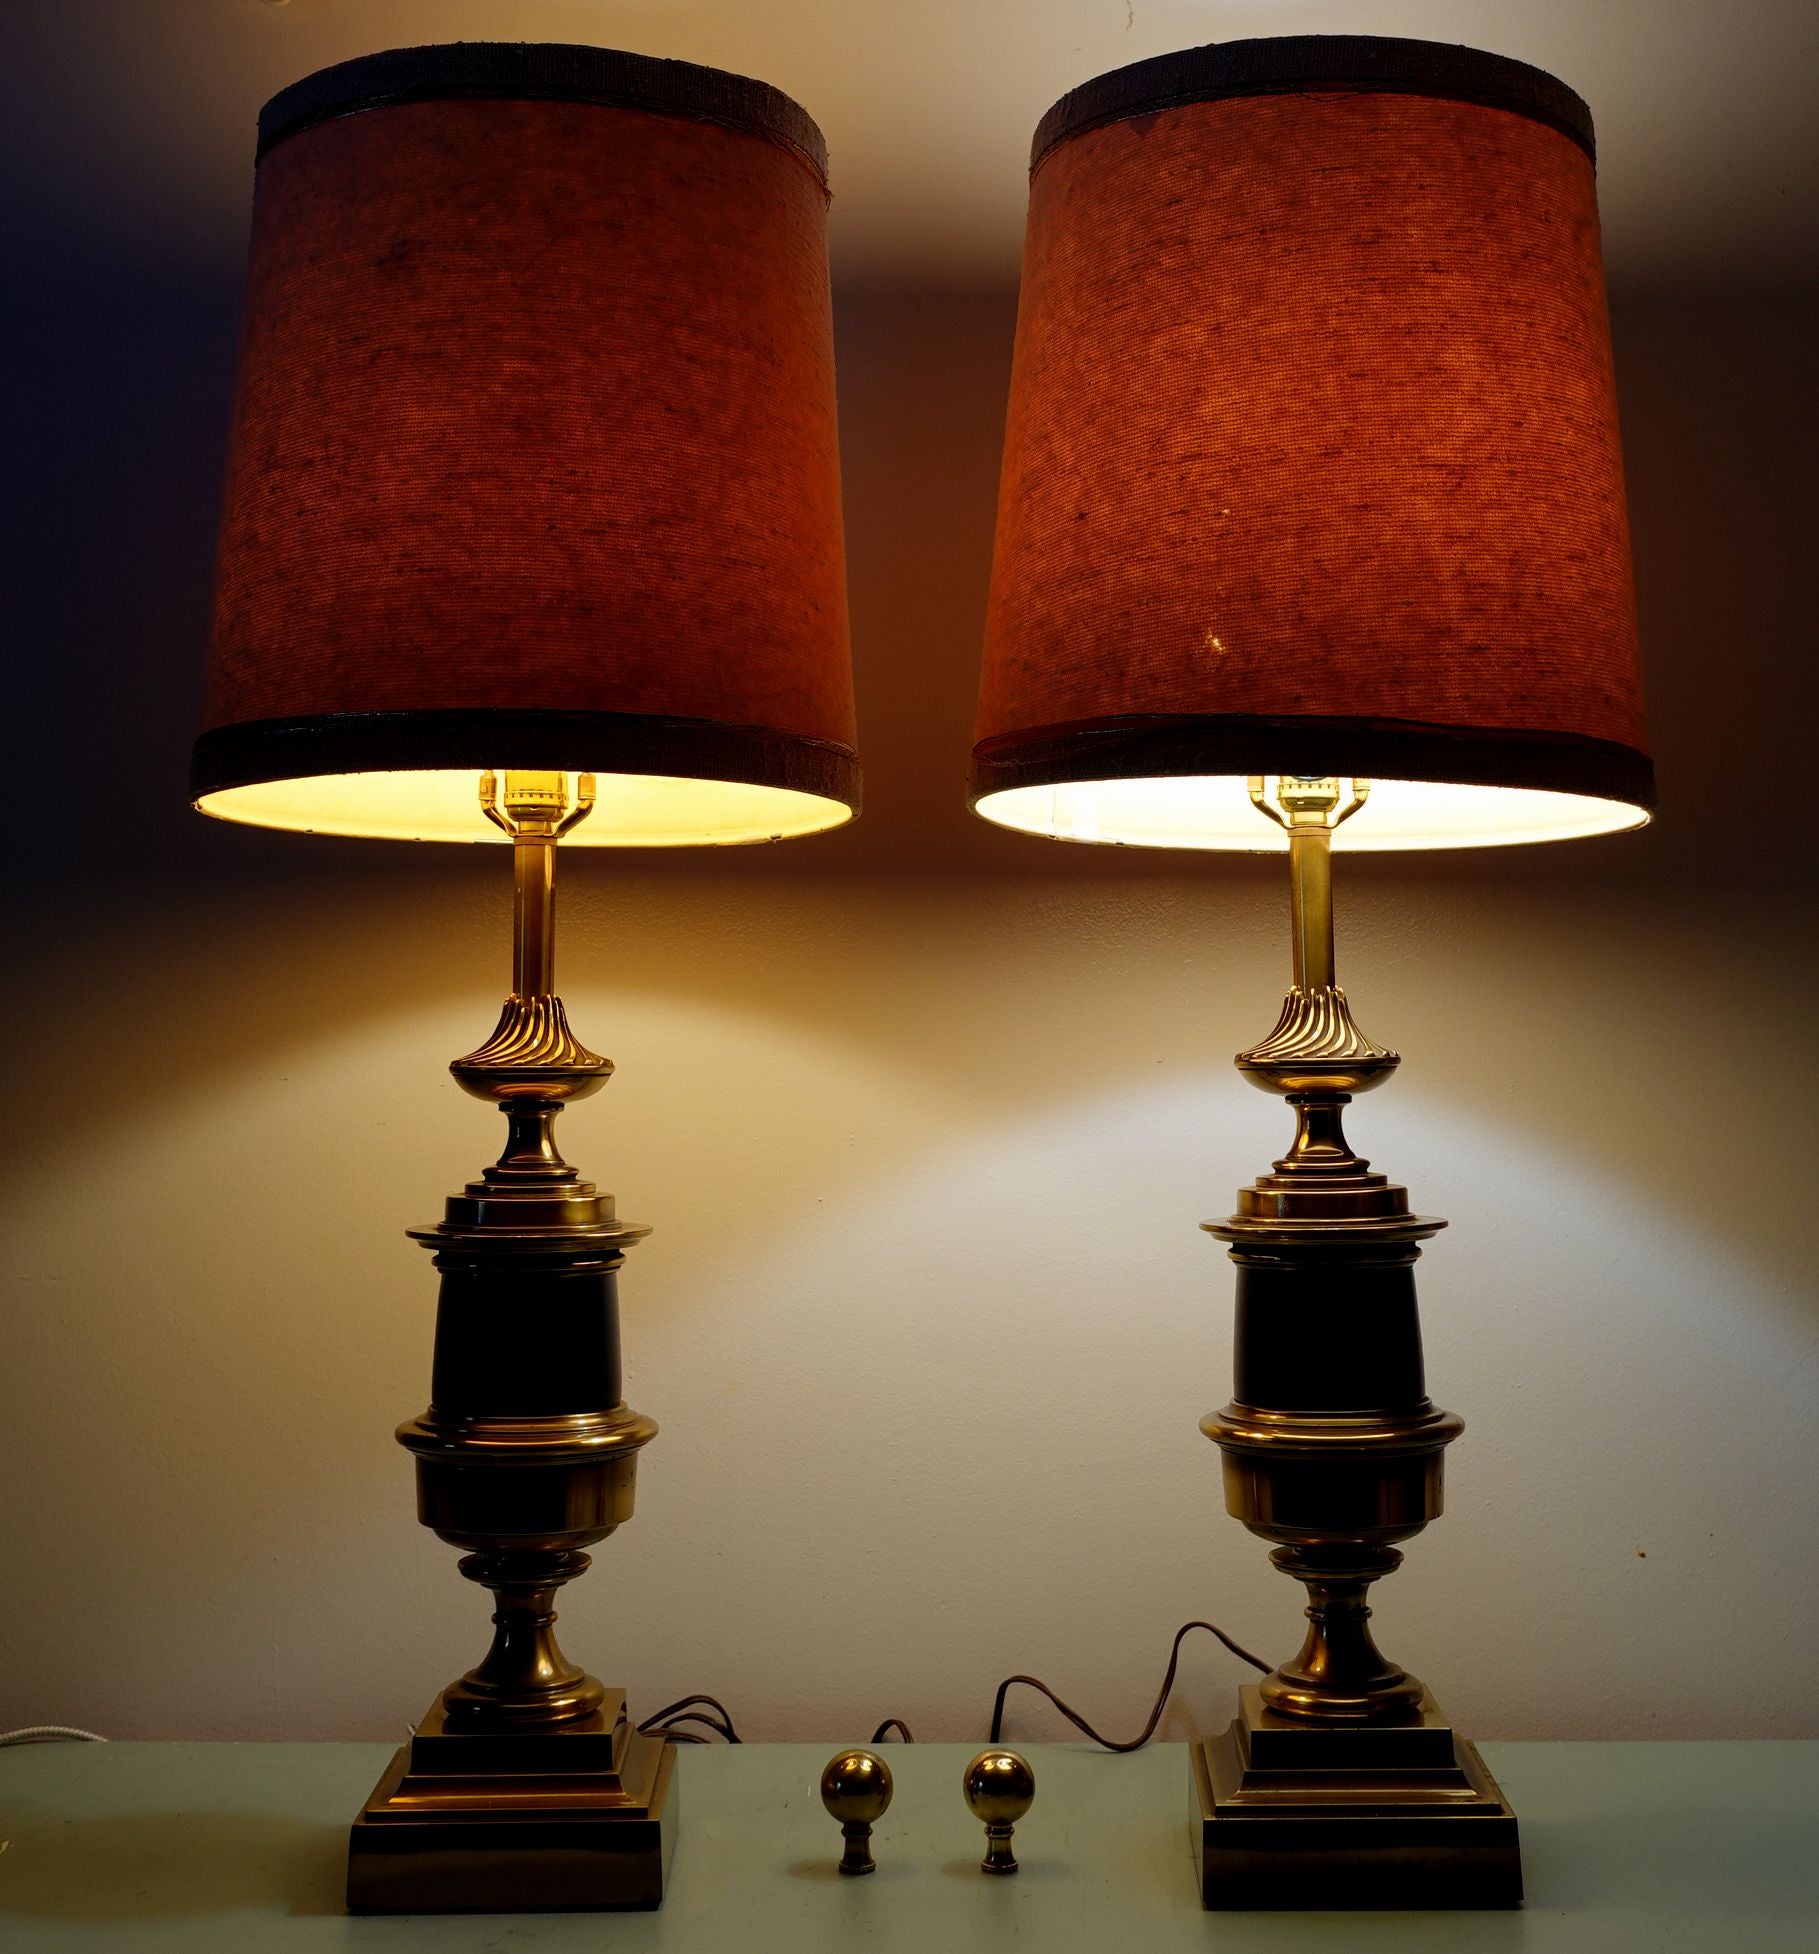 Grande paire de lampes de table Stiffel des années 1940 en forme d'urne, avec des lampes en marbre, laiton et onyx et les abat-jour originaux en toile de gazon avec des fils d'or. Testé en bon état de fonctionnement (les bobs de lumière ne sont pas